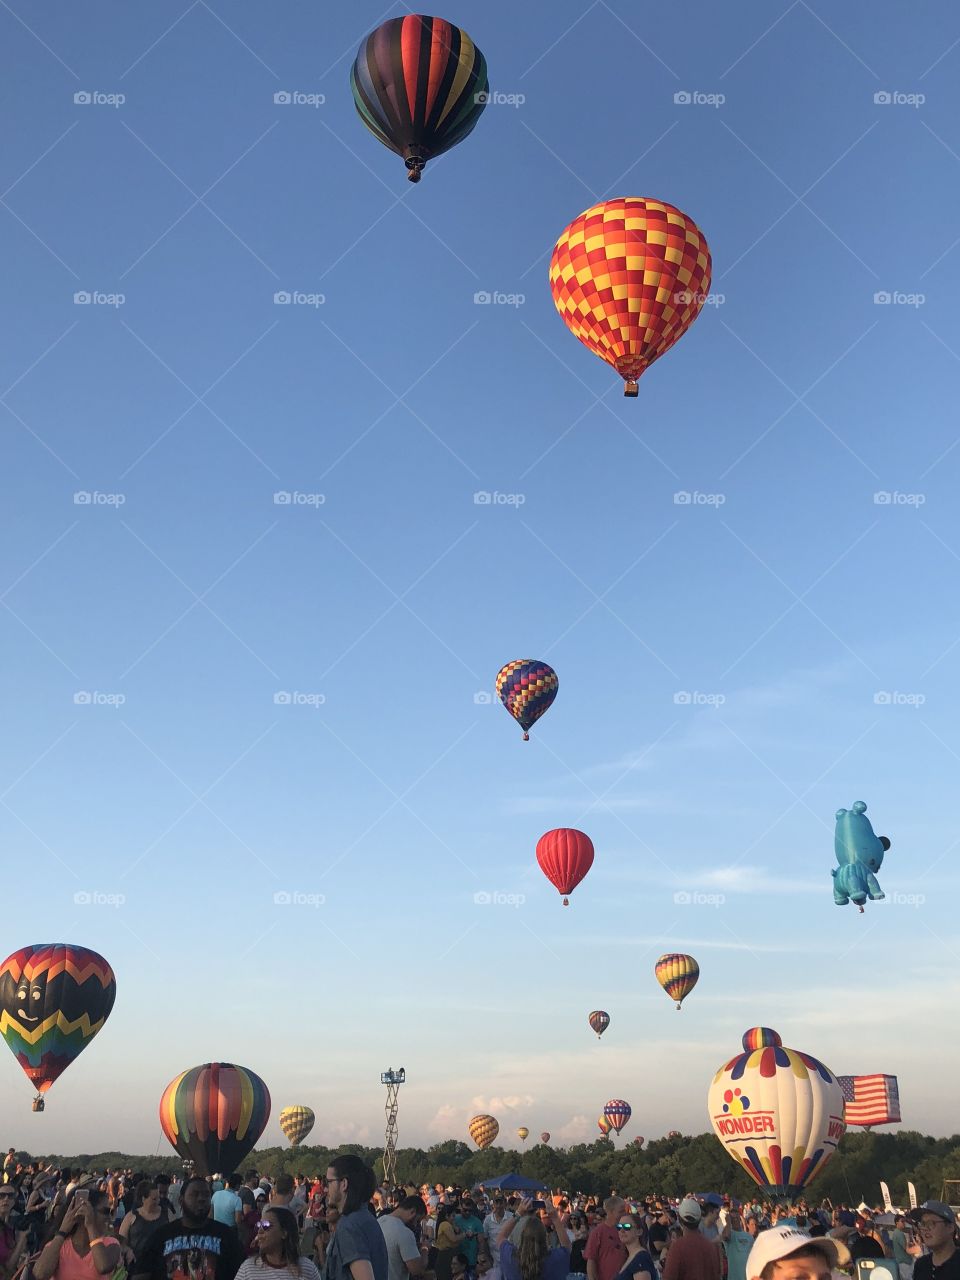 Festival of Ballooning 